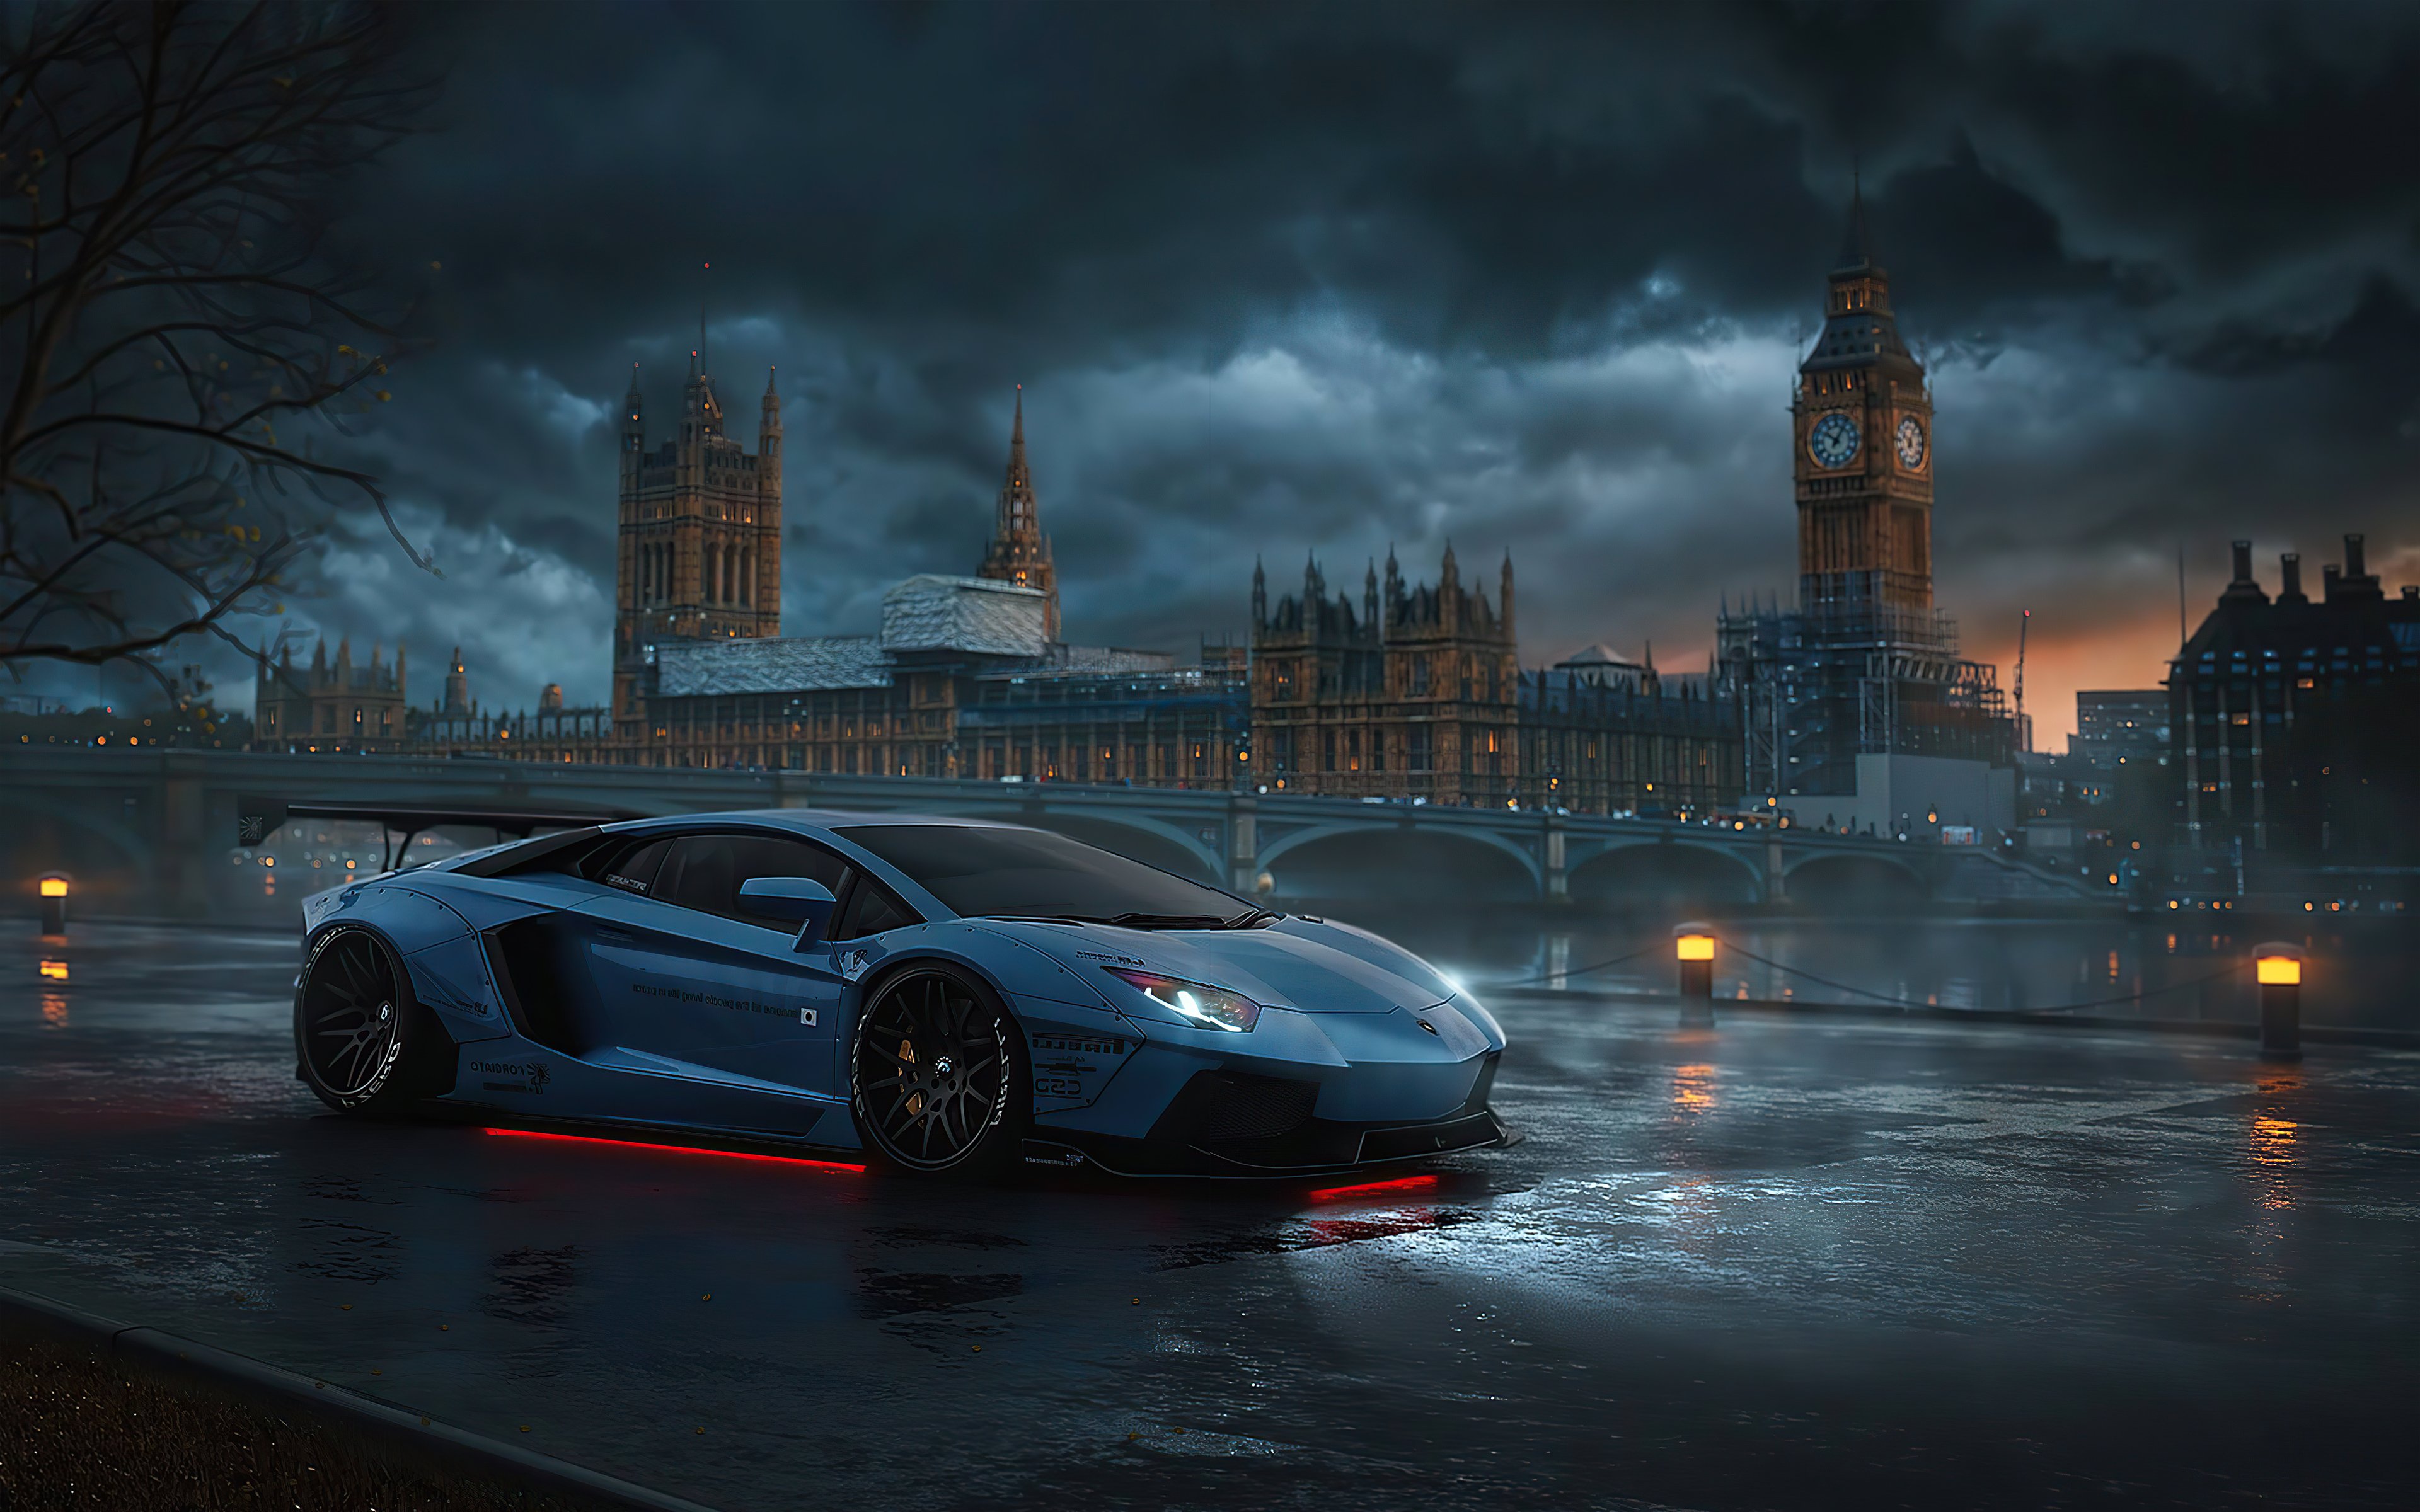 Fondos de pantalla Lamborghini en Londres